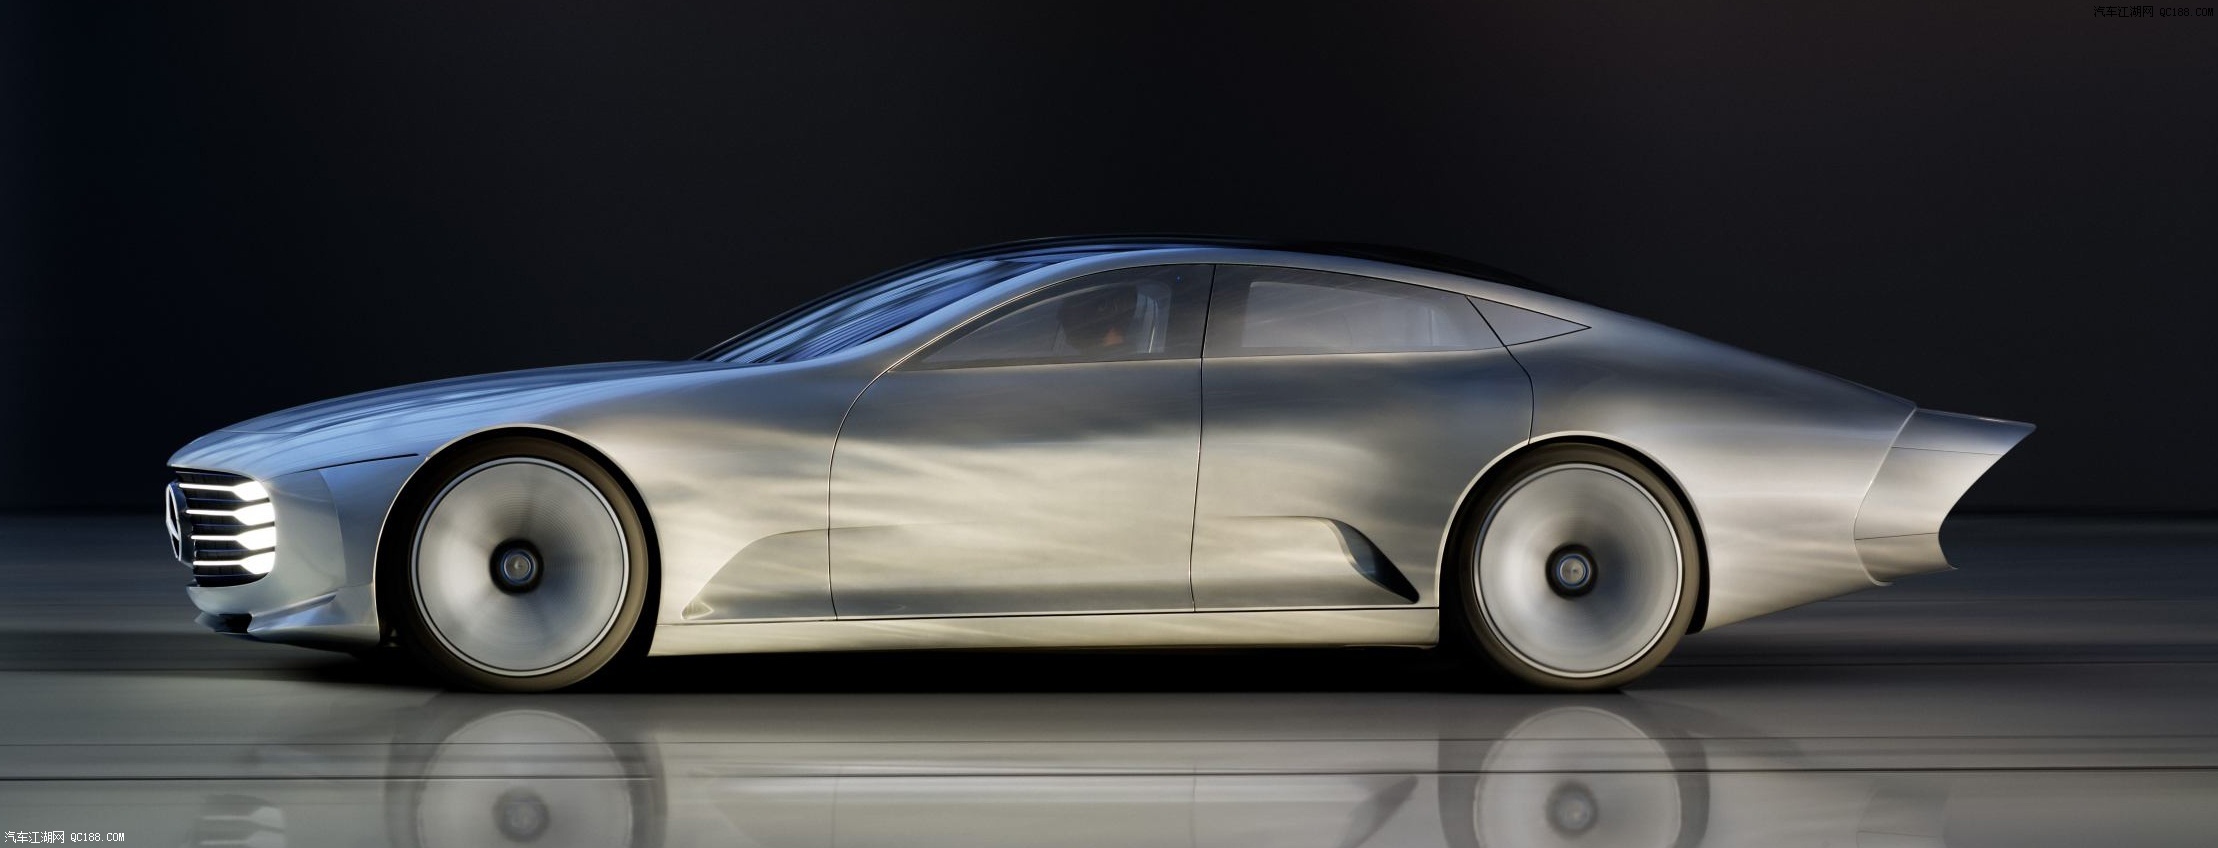 未来就在眼前 奔驰EQXX概念车前沿科技